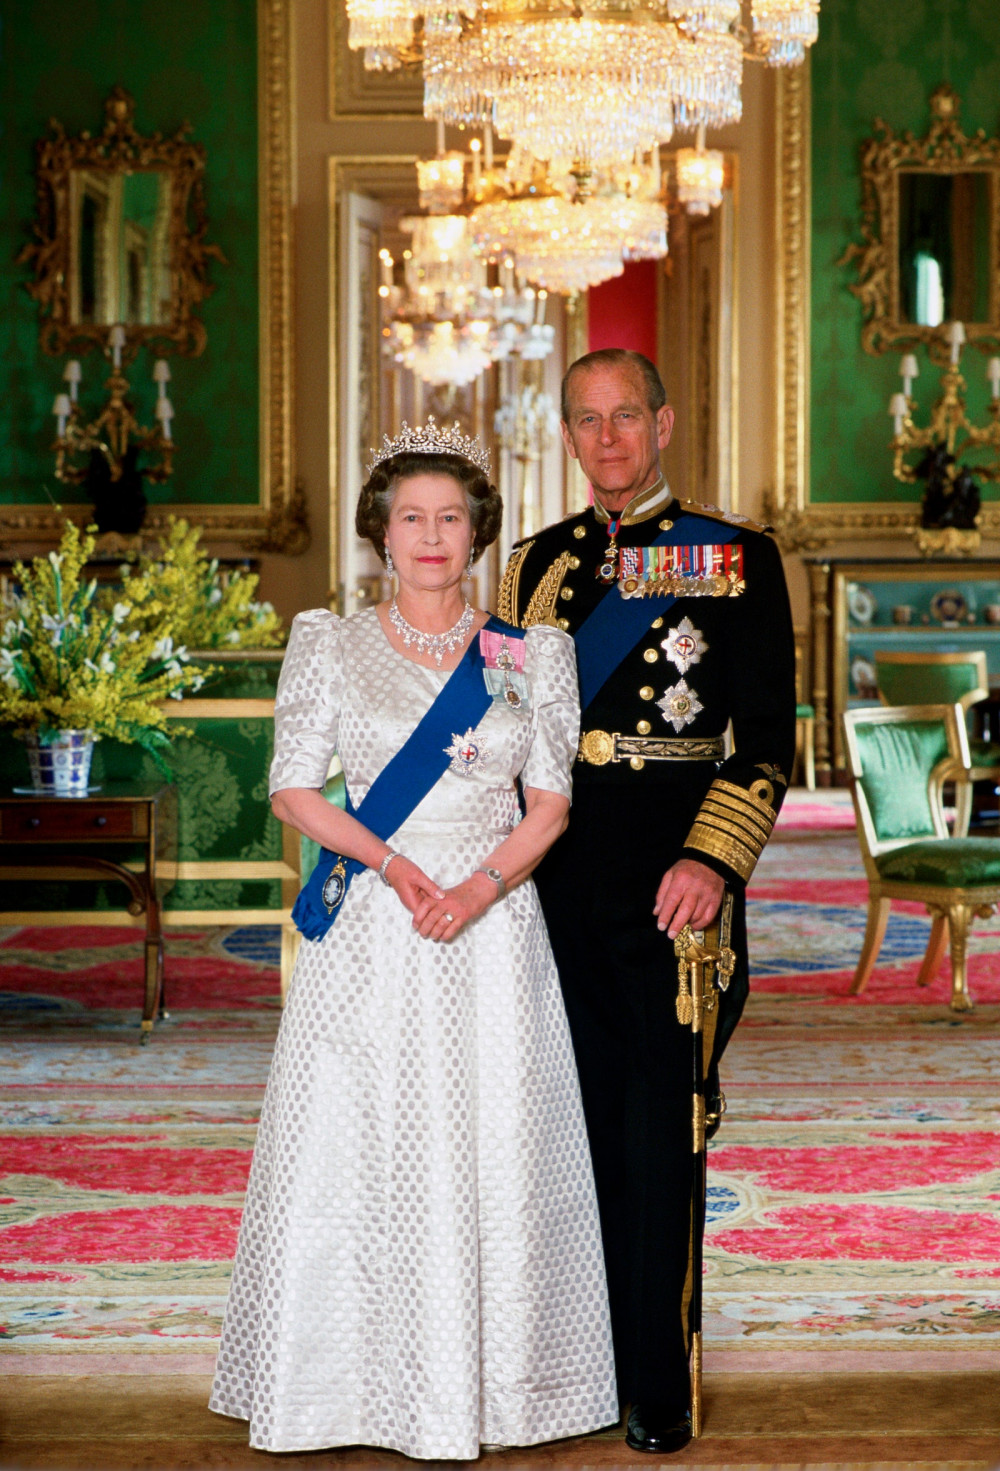 Tháng 11/1997, trong lễ kỉ niệm 50 năm ngày cưới, Nữ hoàng Elizabeth II đã dành những lời đặc biệt khi nói về chồng: “Anh ấy chính là sức mạnh của tôi và đã đồng hành cùng tôi suốt nhiều năm qua”. Đáp lại, Hoàng thân Philip cũng hé lộ sự khoan dung chính là bí quyết để cặp đôi duy trì mối quan hệ bền chặt: 'Tôi nghĩ bài học lớn nhất mà chúng ta học được là: khoan dung là yếu tố quan trọng của bất kỳ cuộc hôn nhân hạnh phúc nào. Nó có thể không quá quan trọng khi mọi việc thuận lợi nhưng lại rất quan trọng khi khó khăn'.